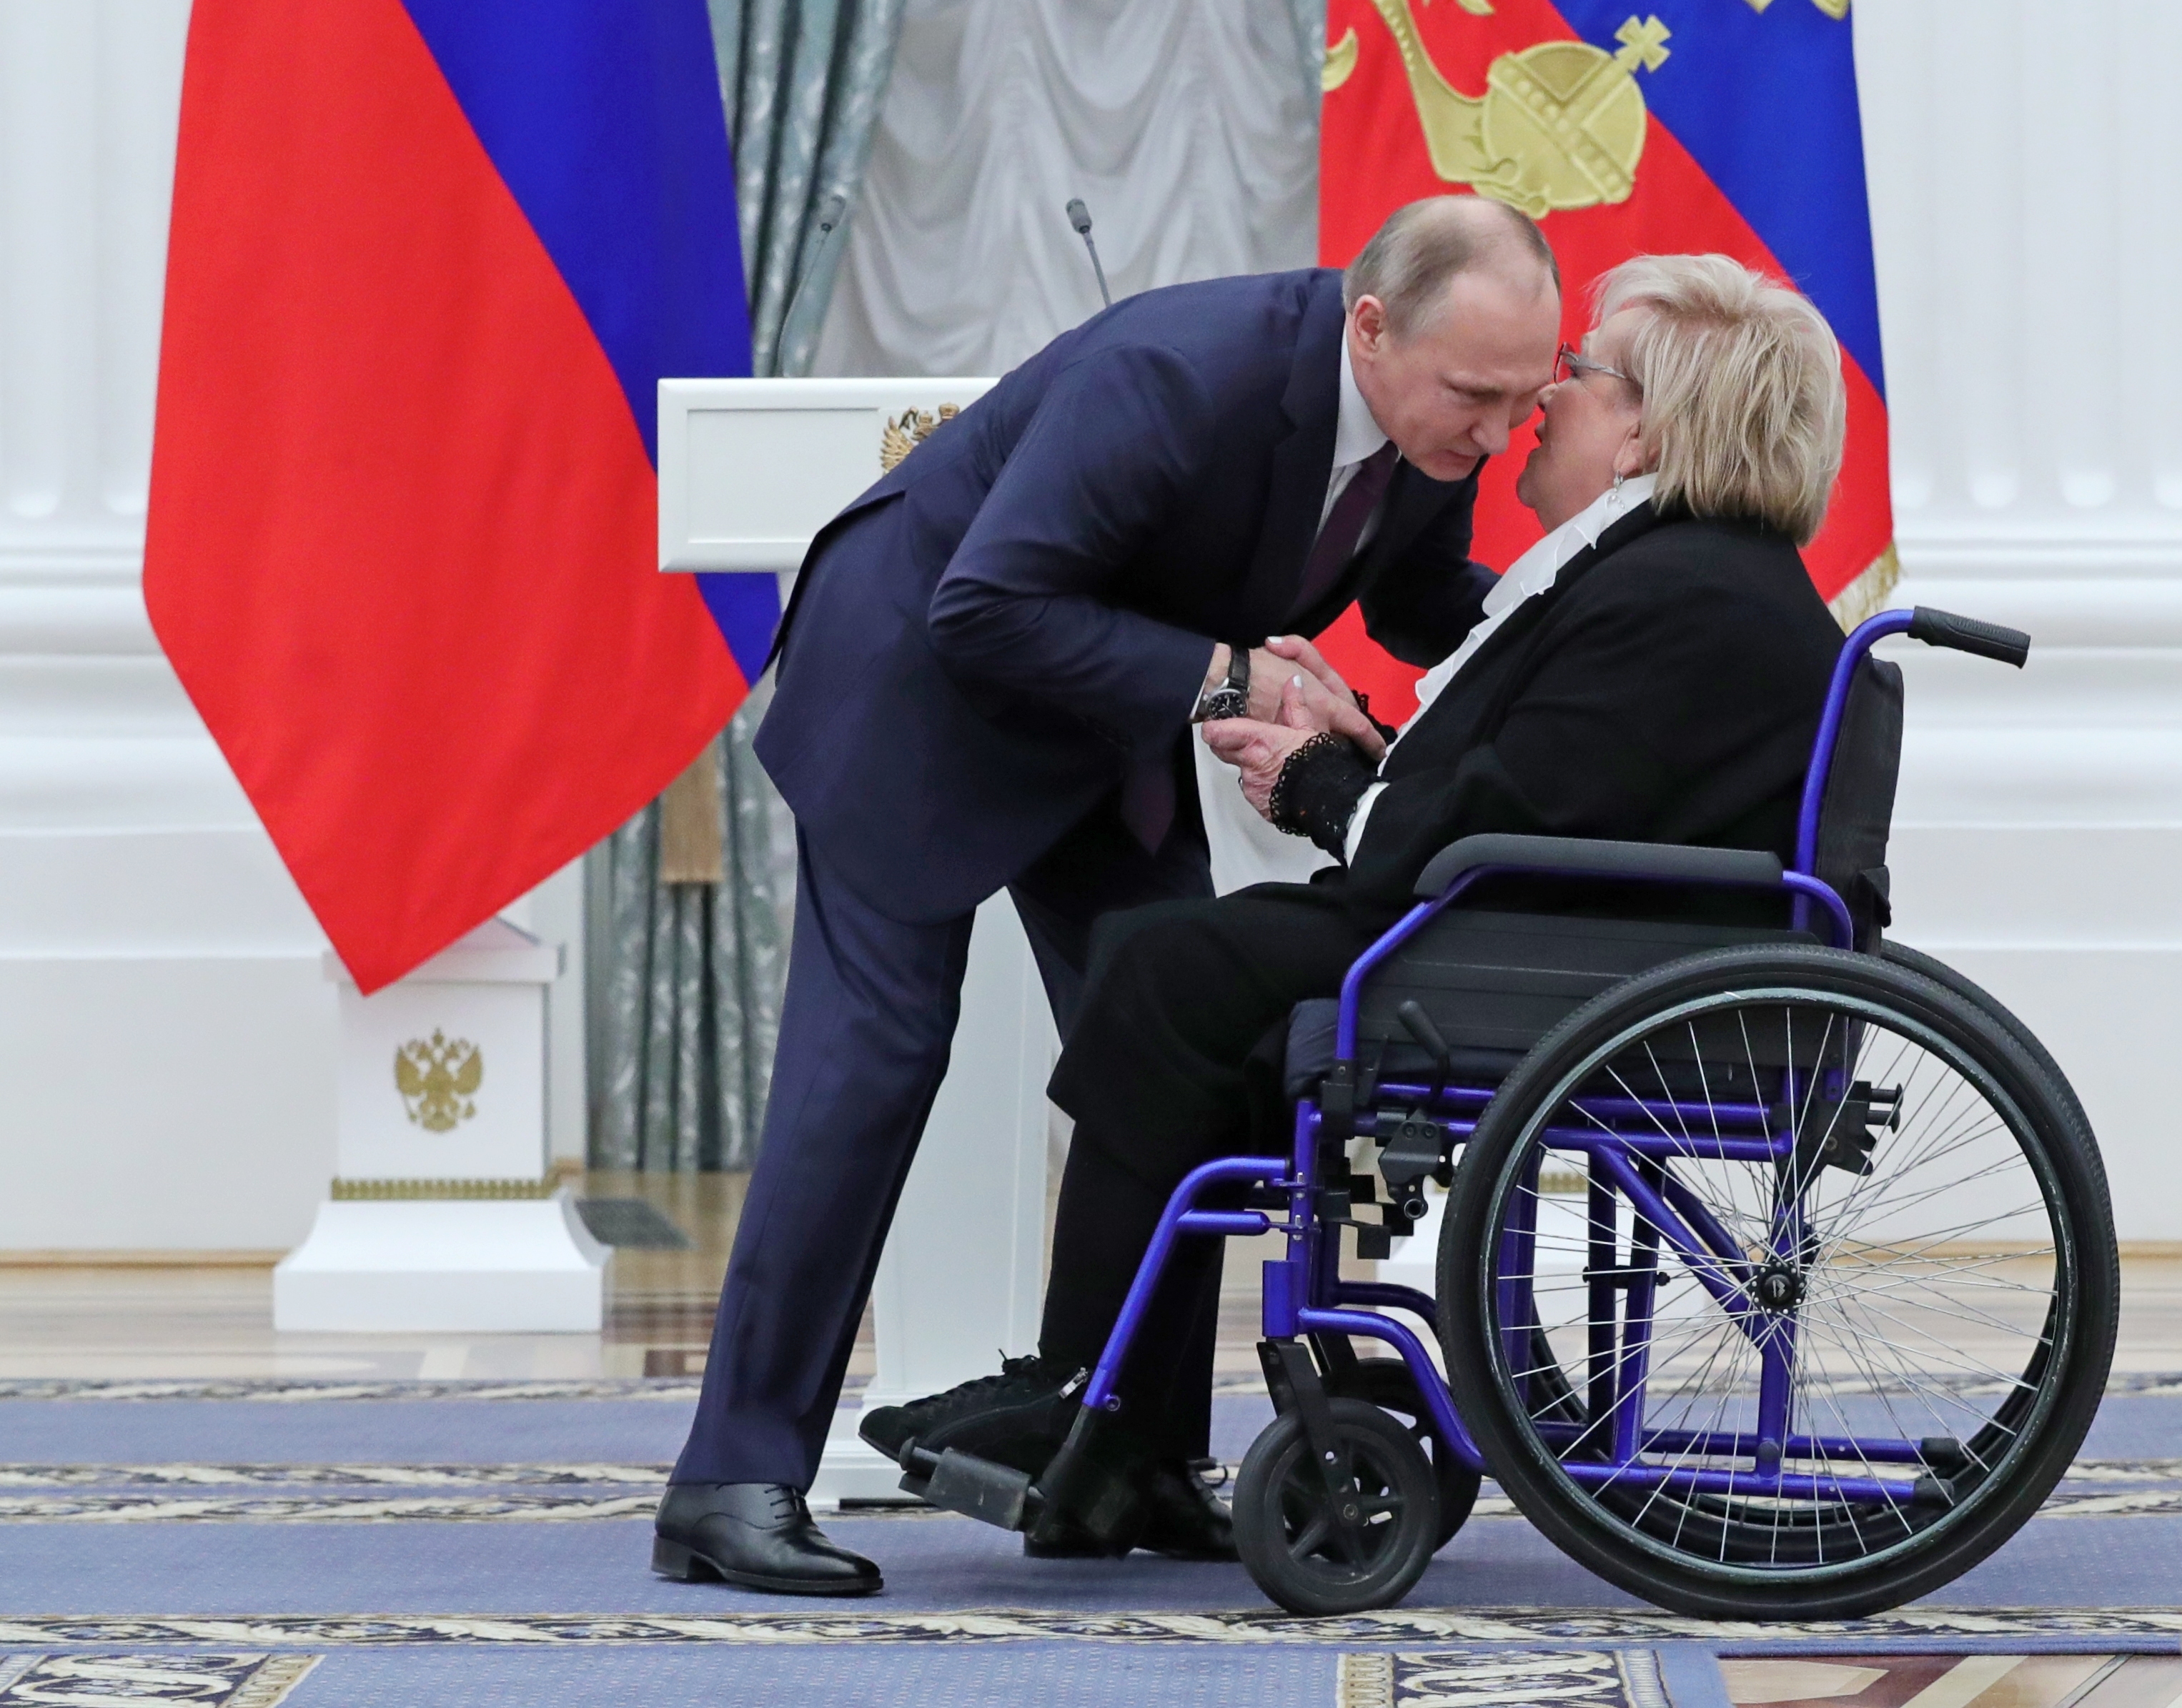 Президентът Путин връчва медал на директора на театър ”Современник” Галина Волчек